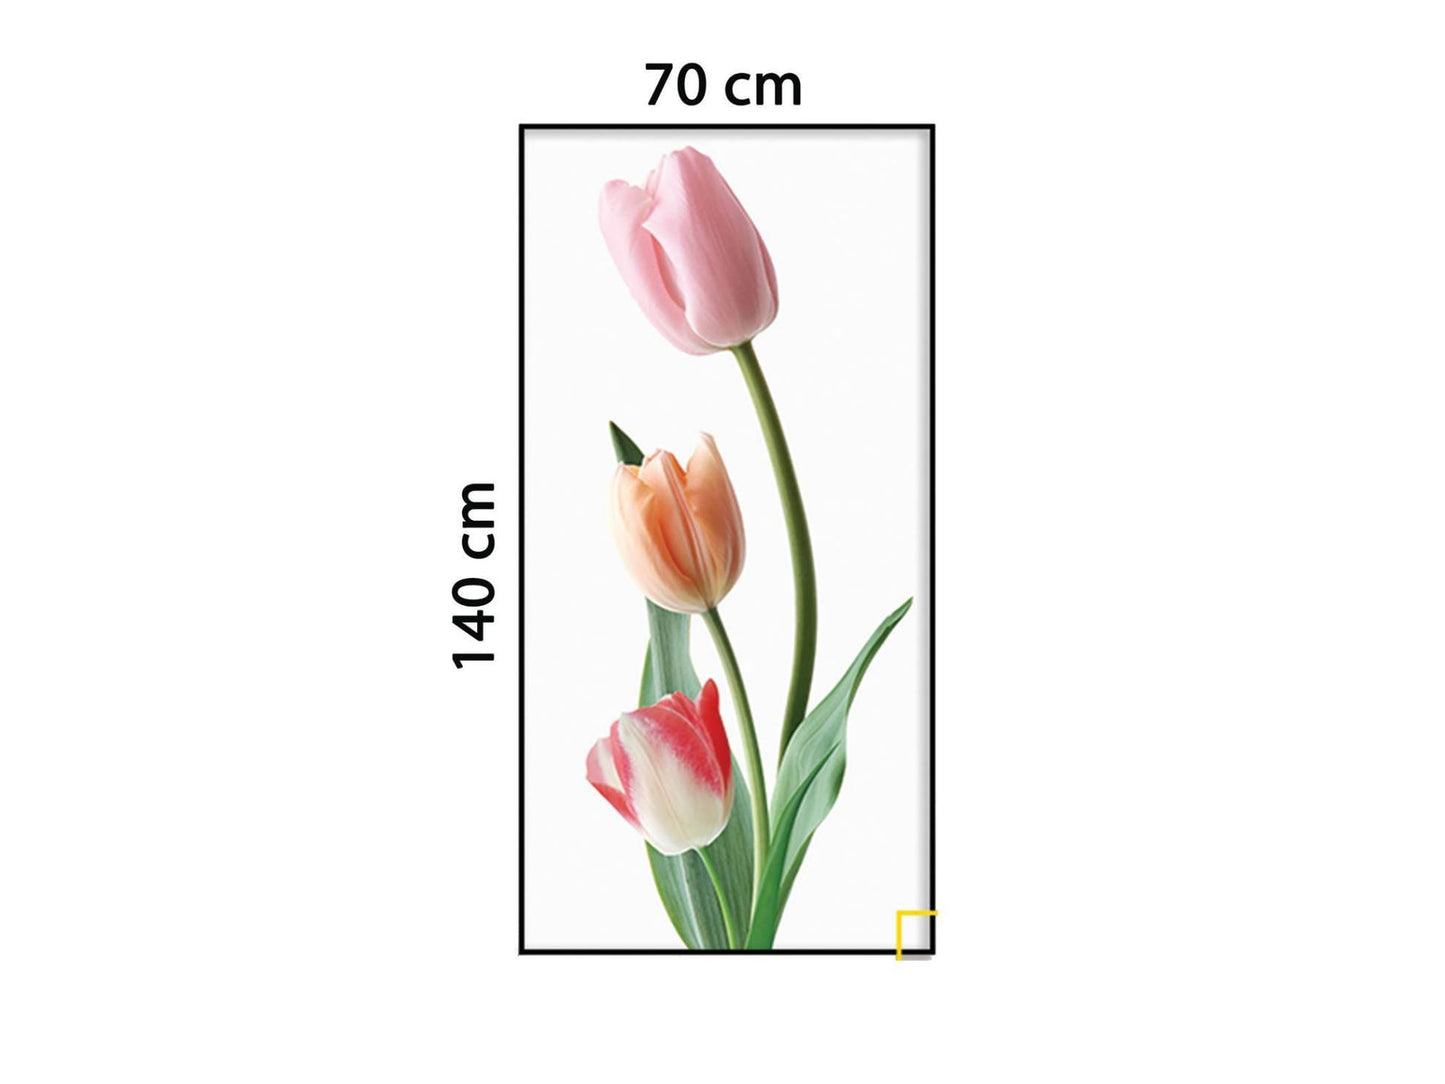 Tranh Hoa Tulip Đơn Giản - HD897